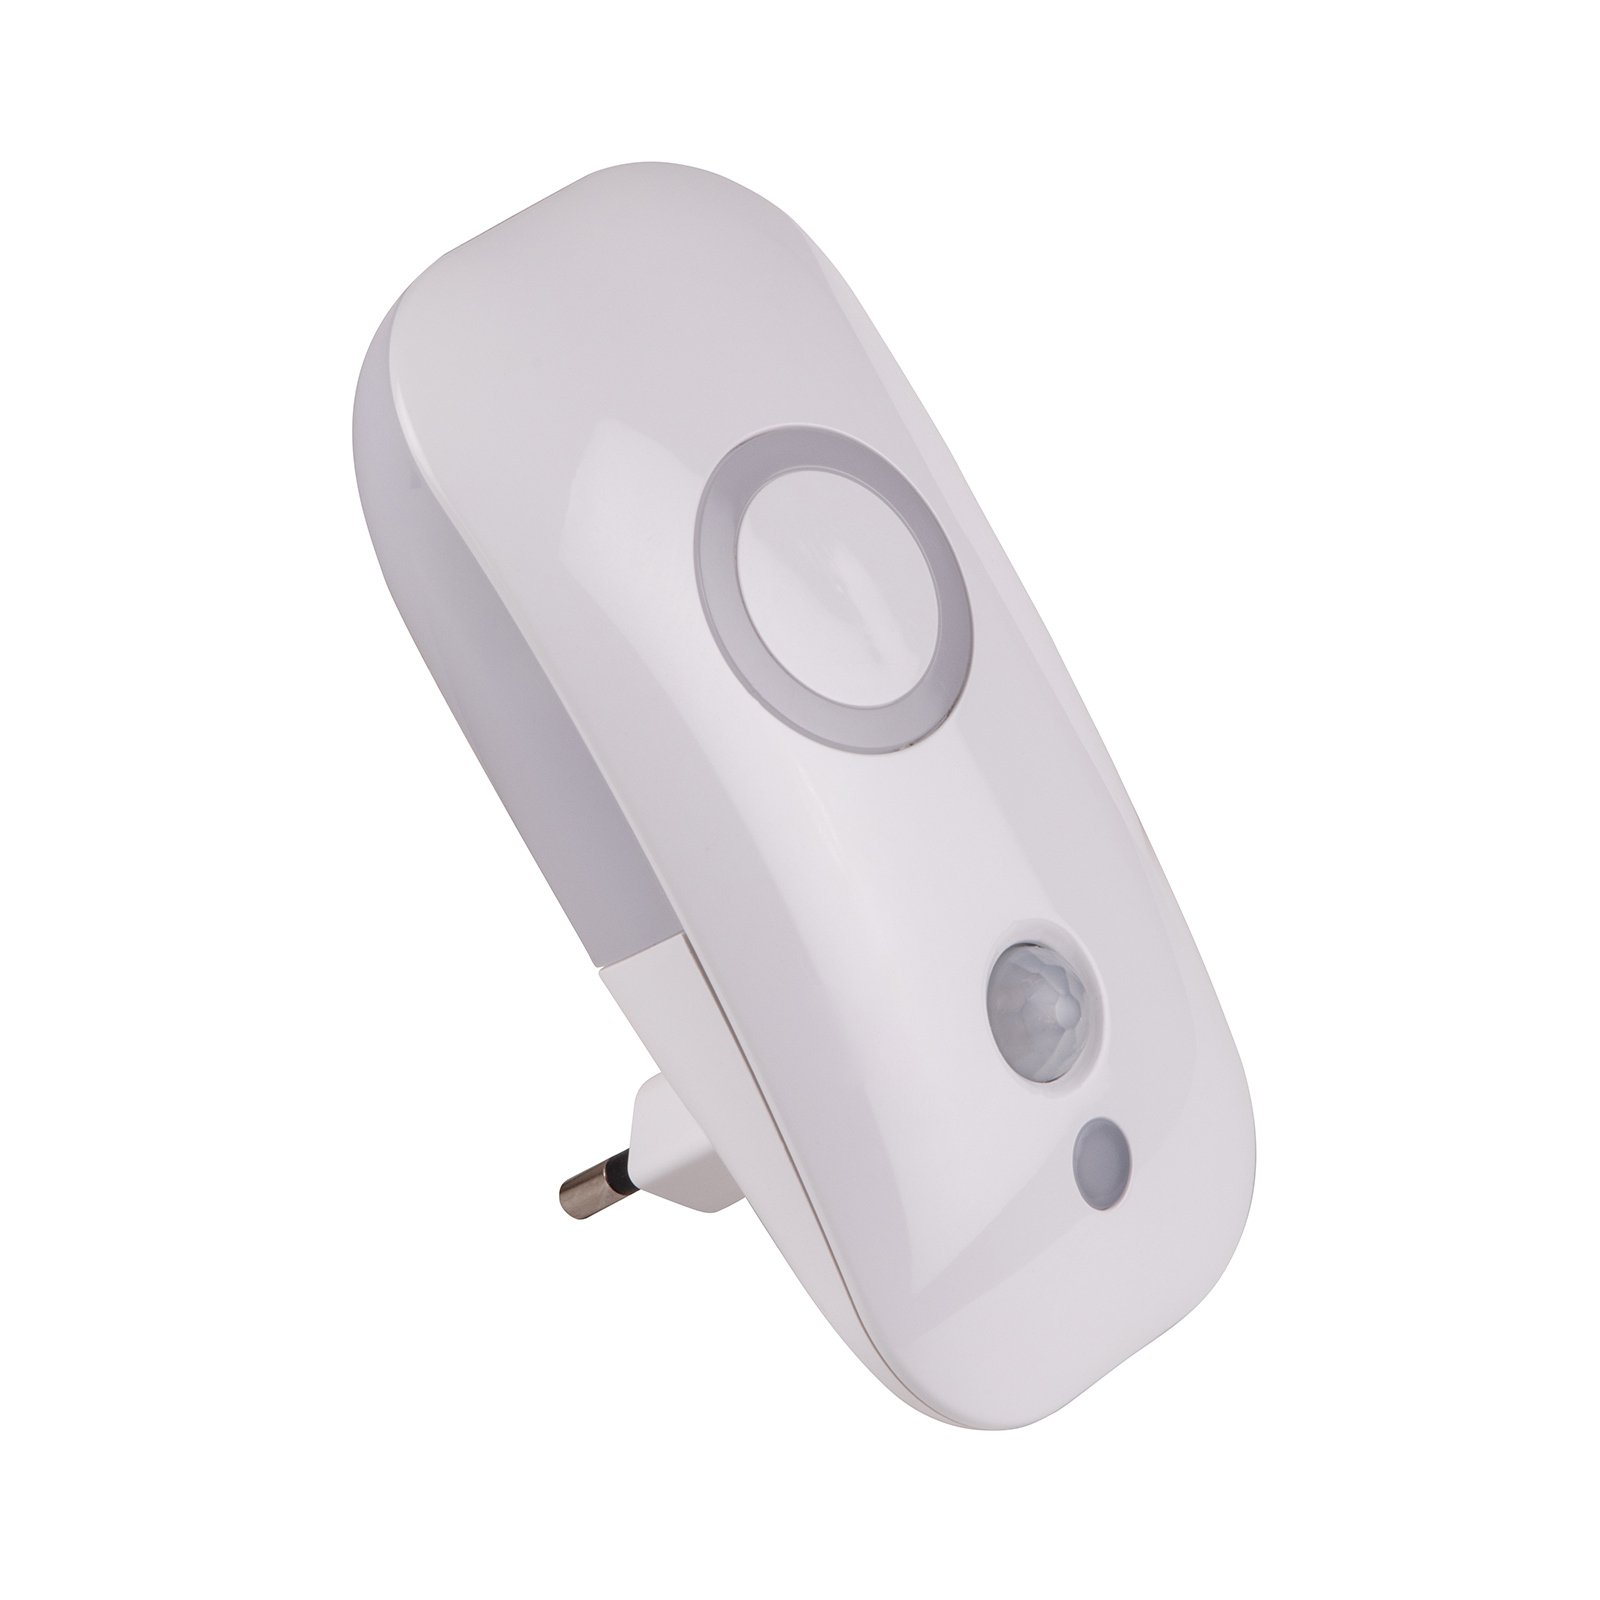 verkwistend wetgeving Vlot Dora - LED nachtlampje voor stopcontact m sensor | Lampen24.be